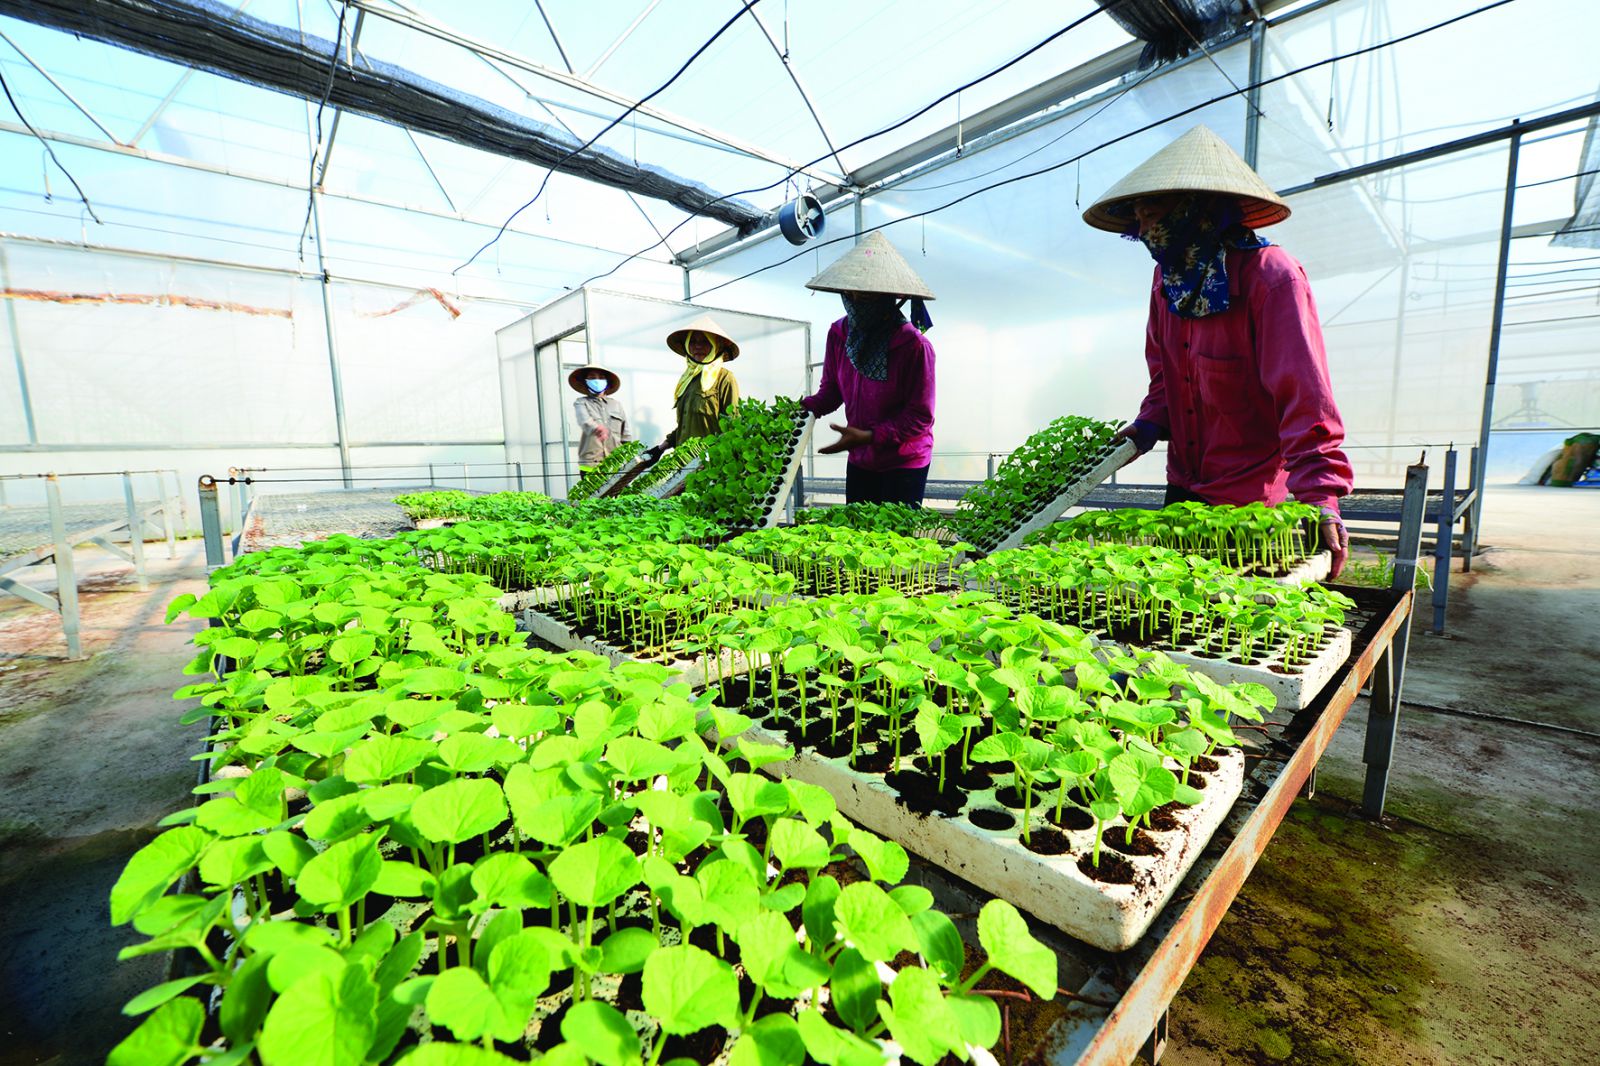 Mô hình trồng rau sạch tại tỉnh Hà Nam theo chuẩn Global GAP đang nhanh chóng được nhân rộng.